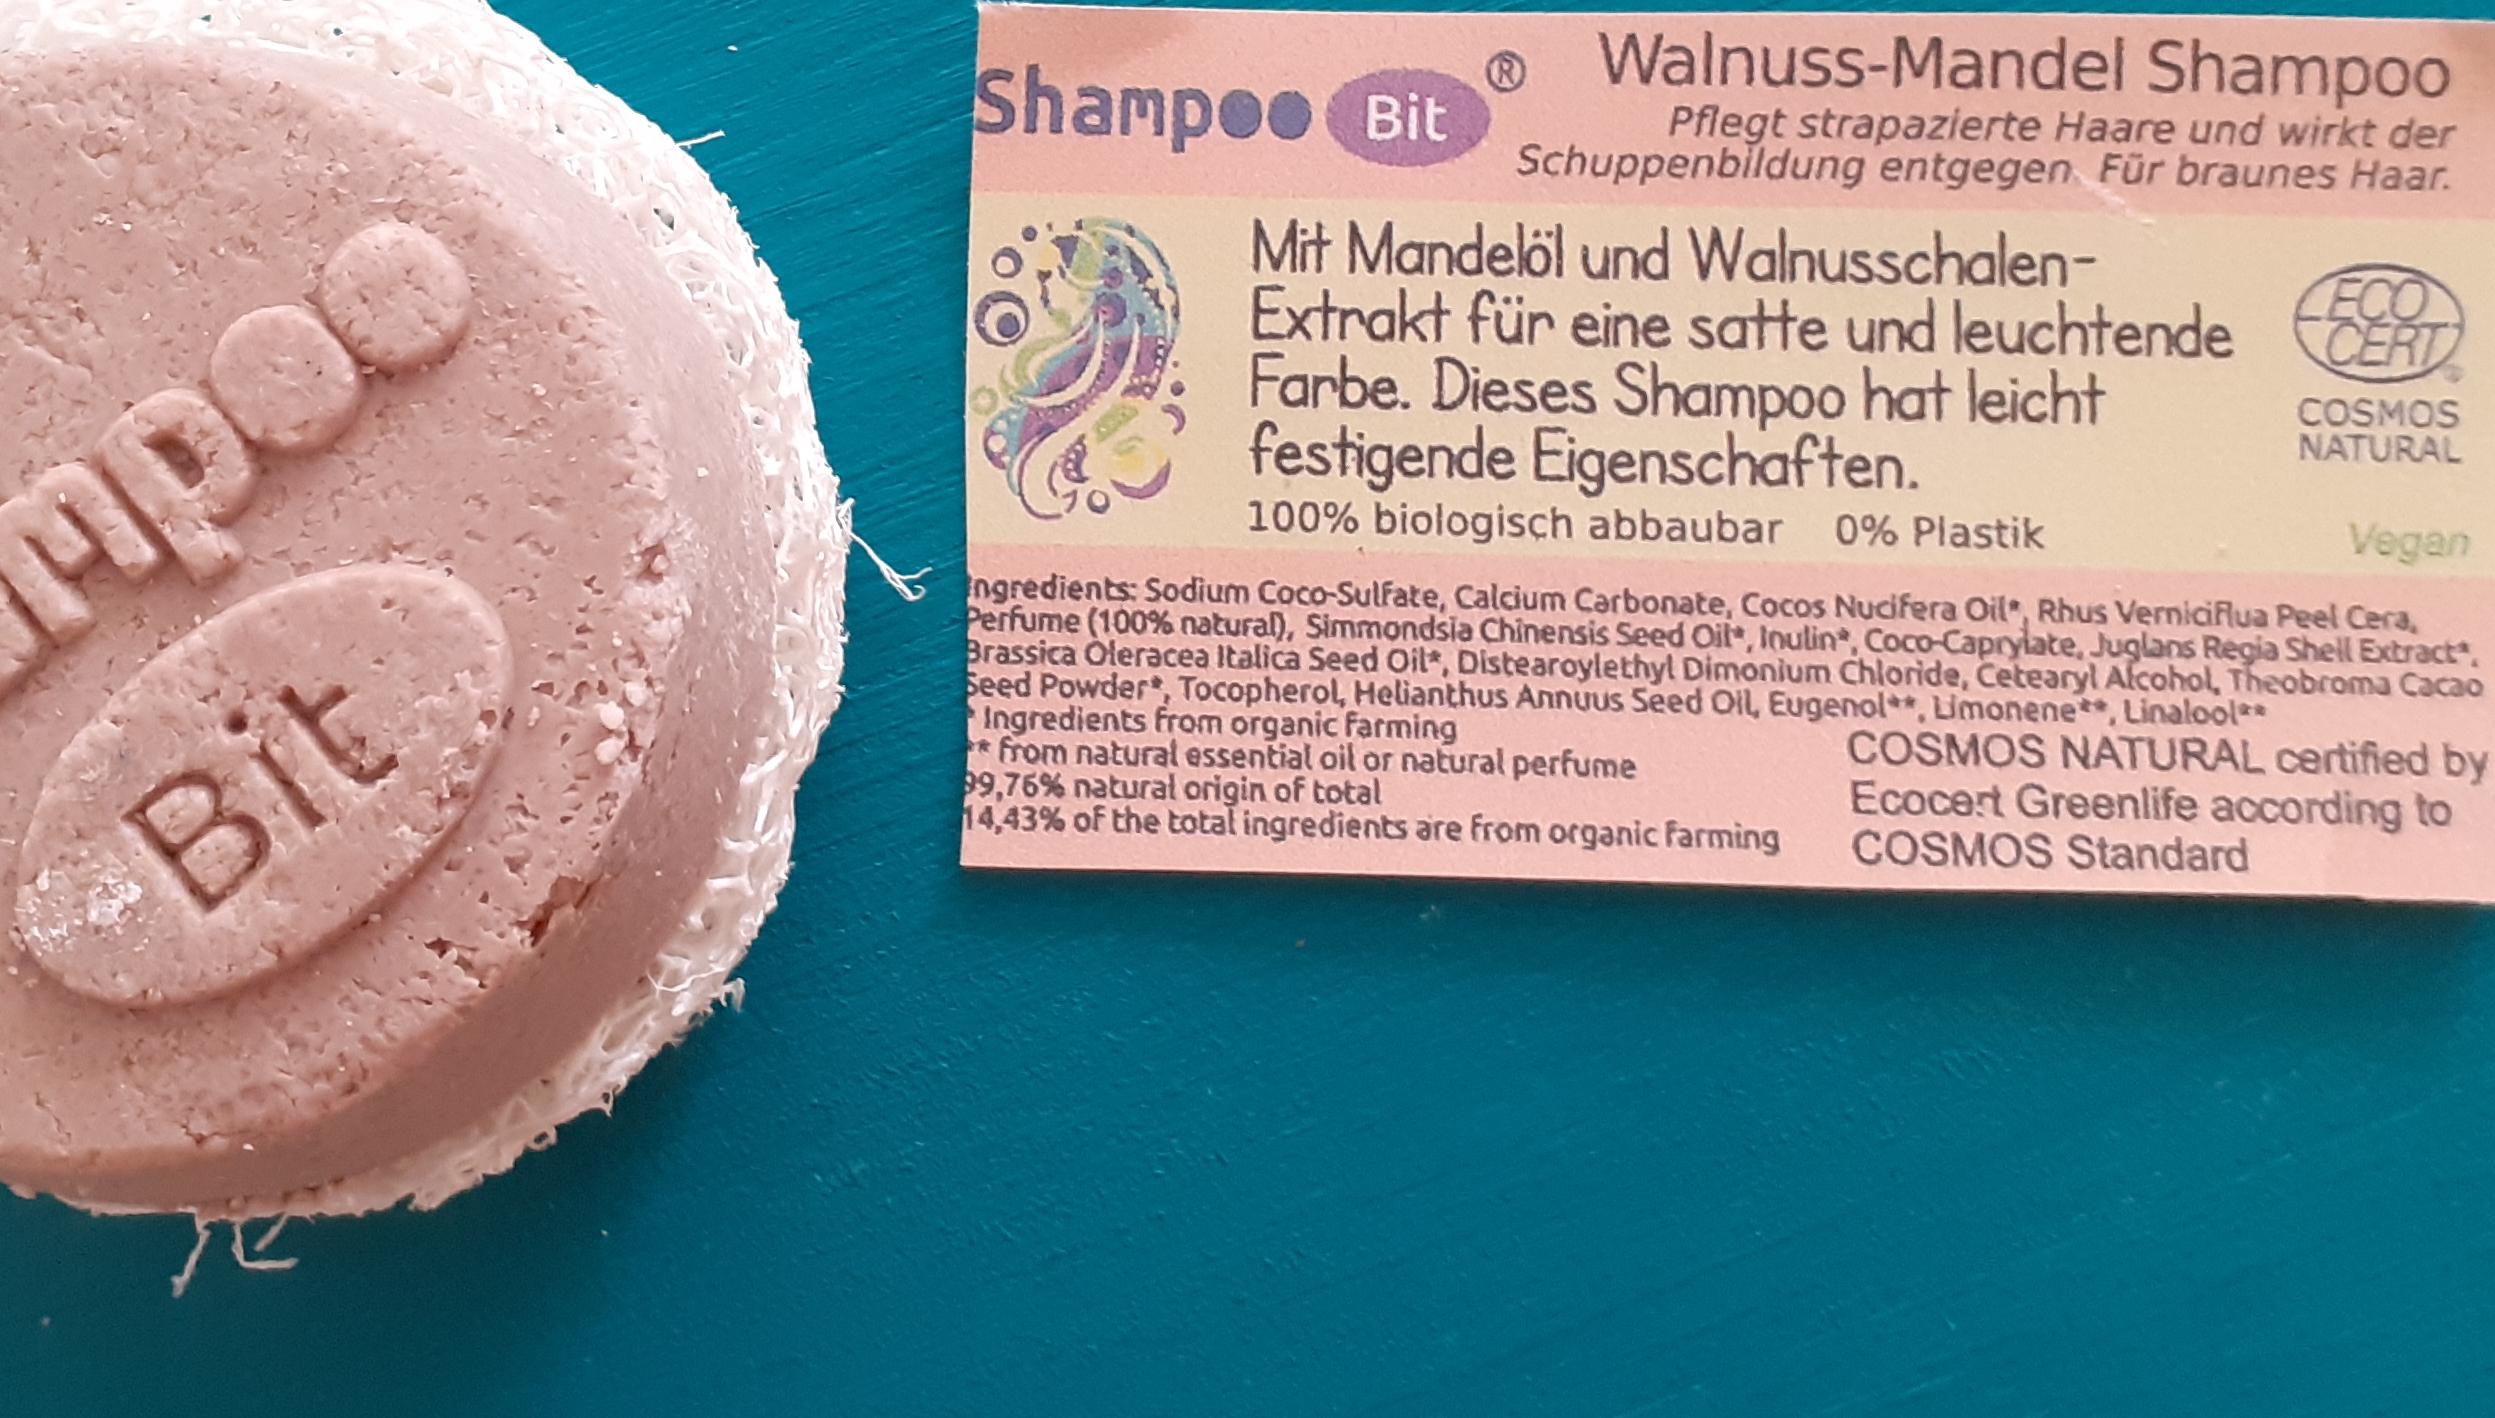 Shampoo Bit von Rosenrot, Walnuss Mandel